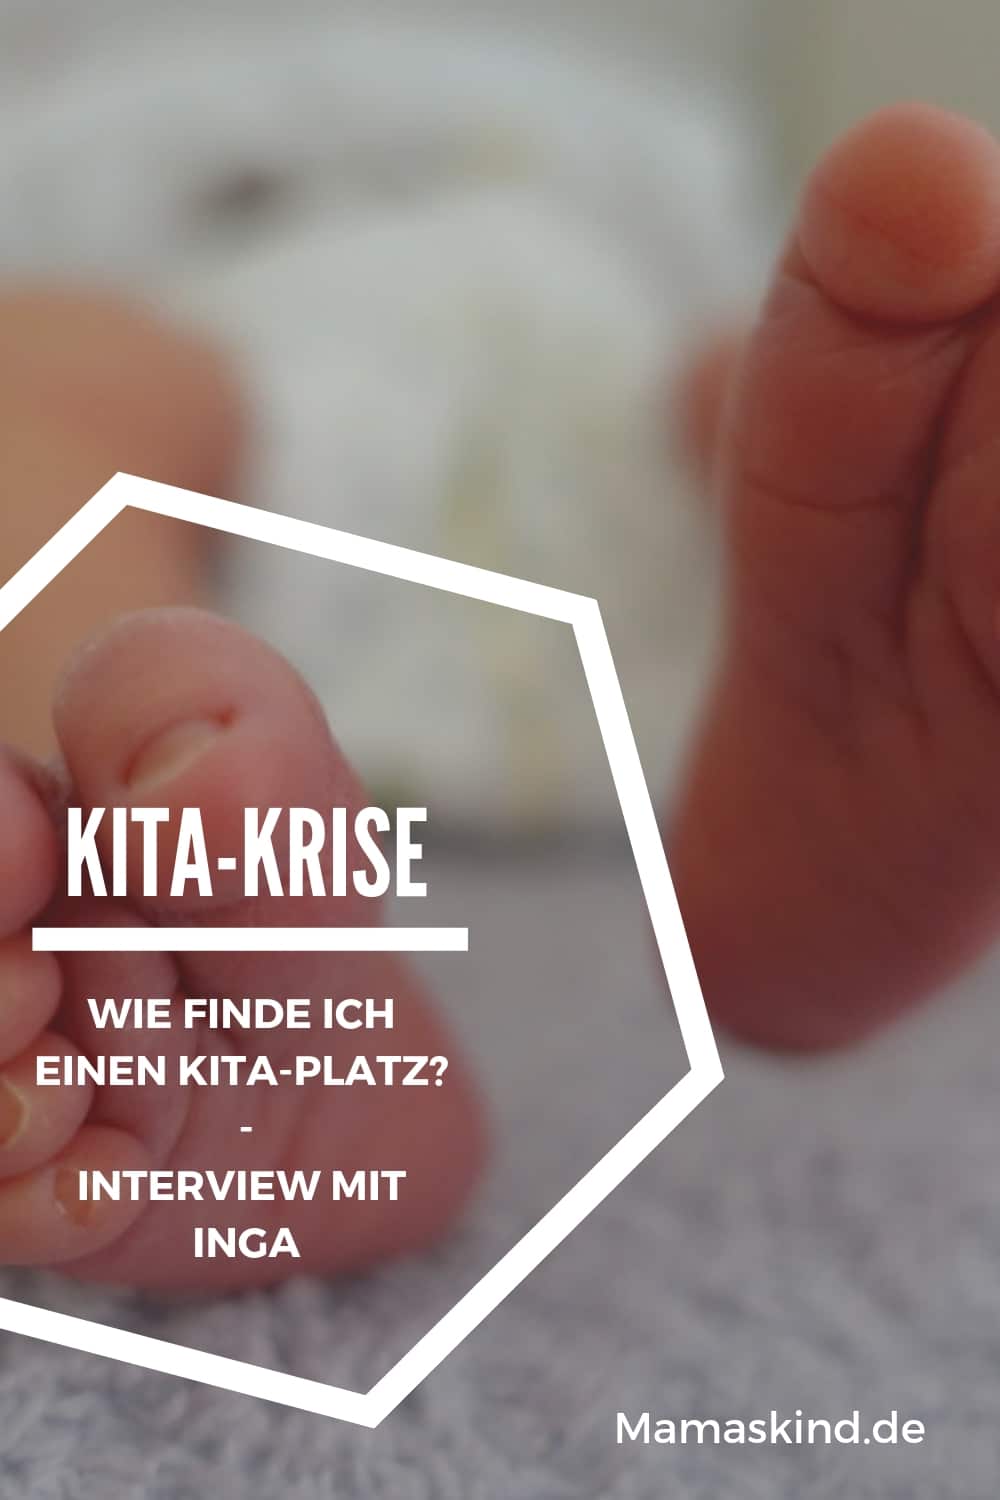 Kita-Krise: Wie finde ich einen Kita-Platz? Interview mit Inga von Maternita | Mehr Infos auf Mamaskind.de